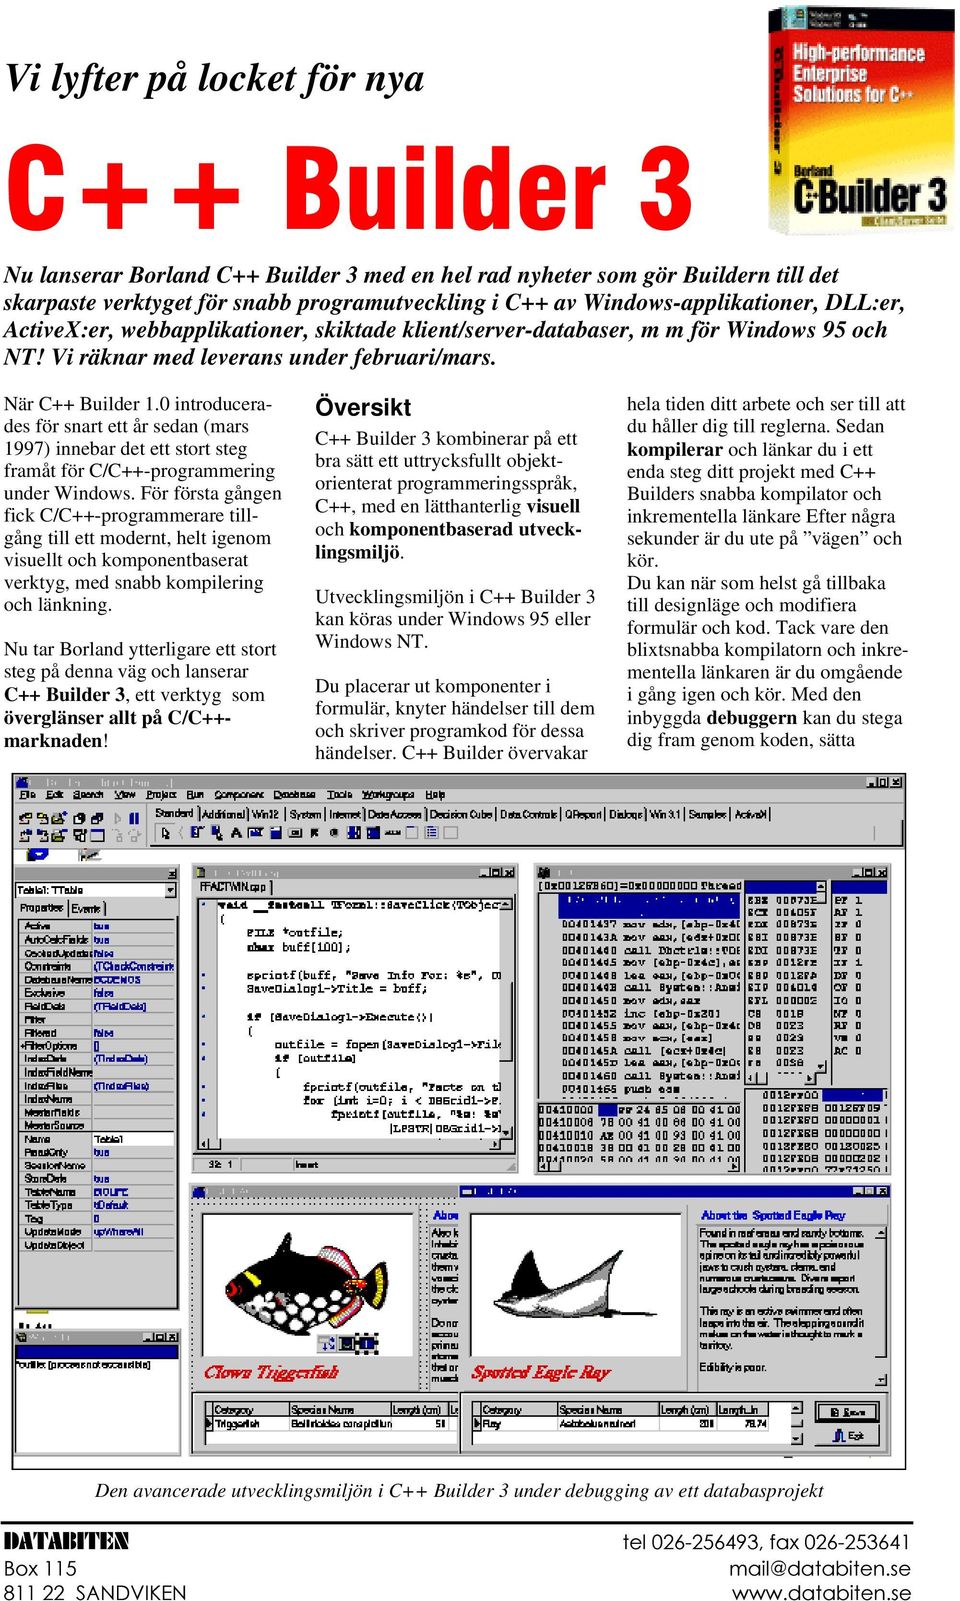 0 introducerades för snart ett år sedan (mars 1997) innebar det ett stort steg framåt för C/C++-programmering under Windows.